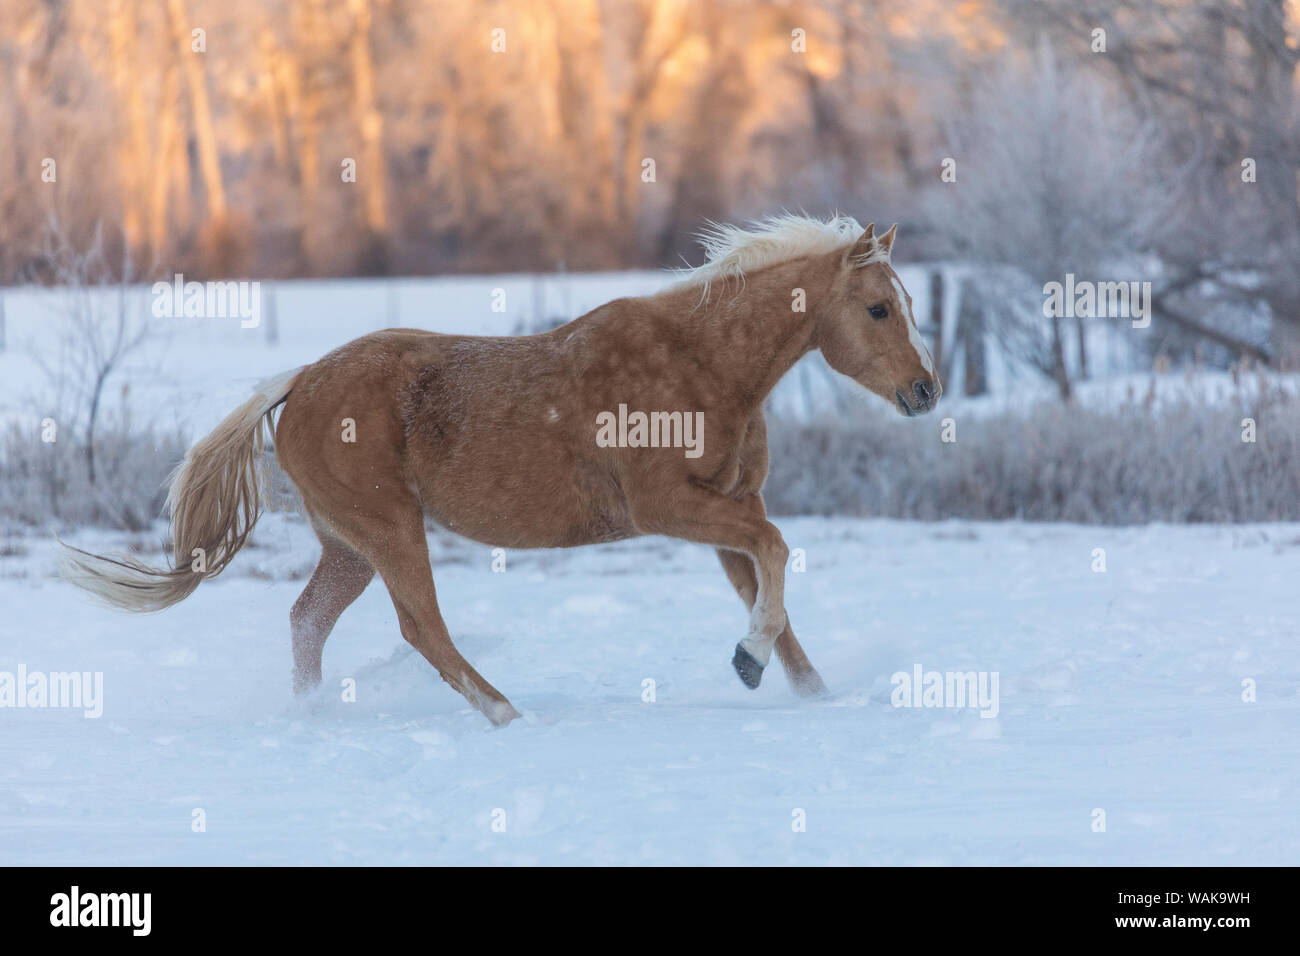 Cavallo rigido in inverno sul nascondiglio Ranch, Shell, Wyoming. Cavalli in esecuzione nella neve Foto Stock